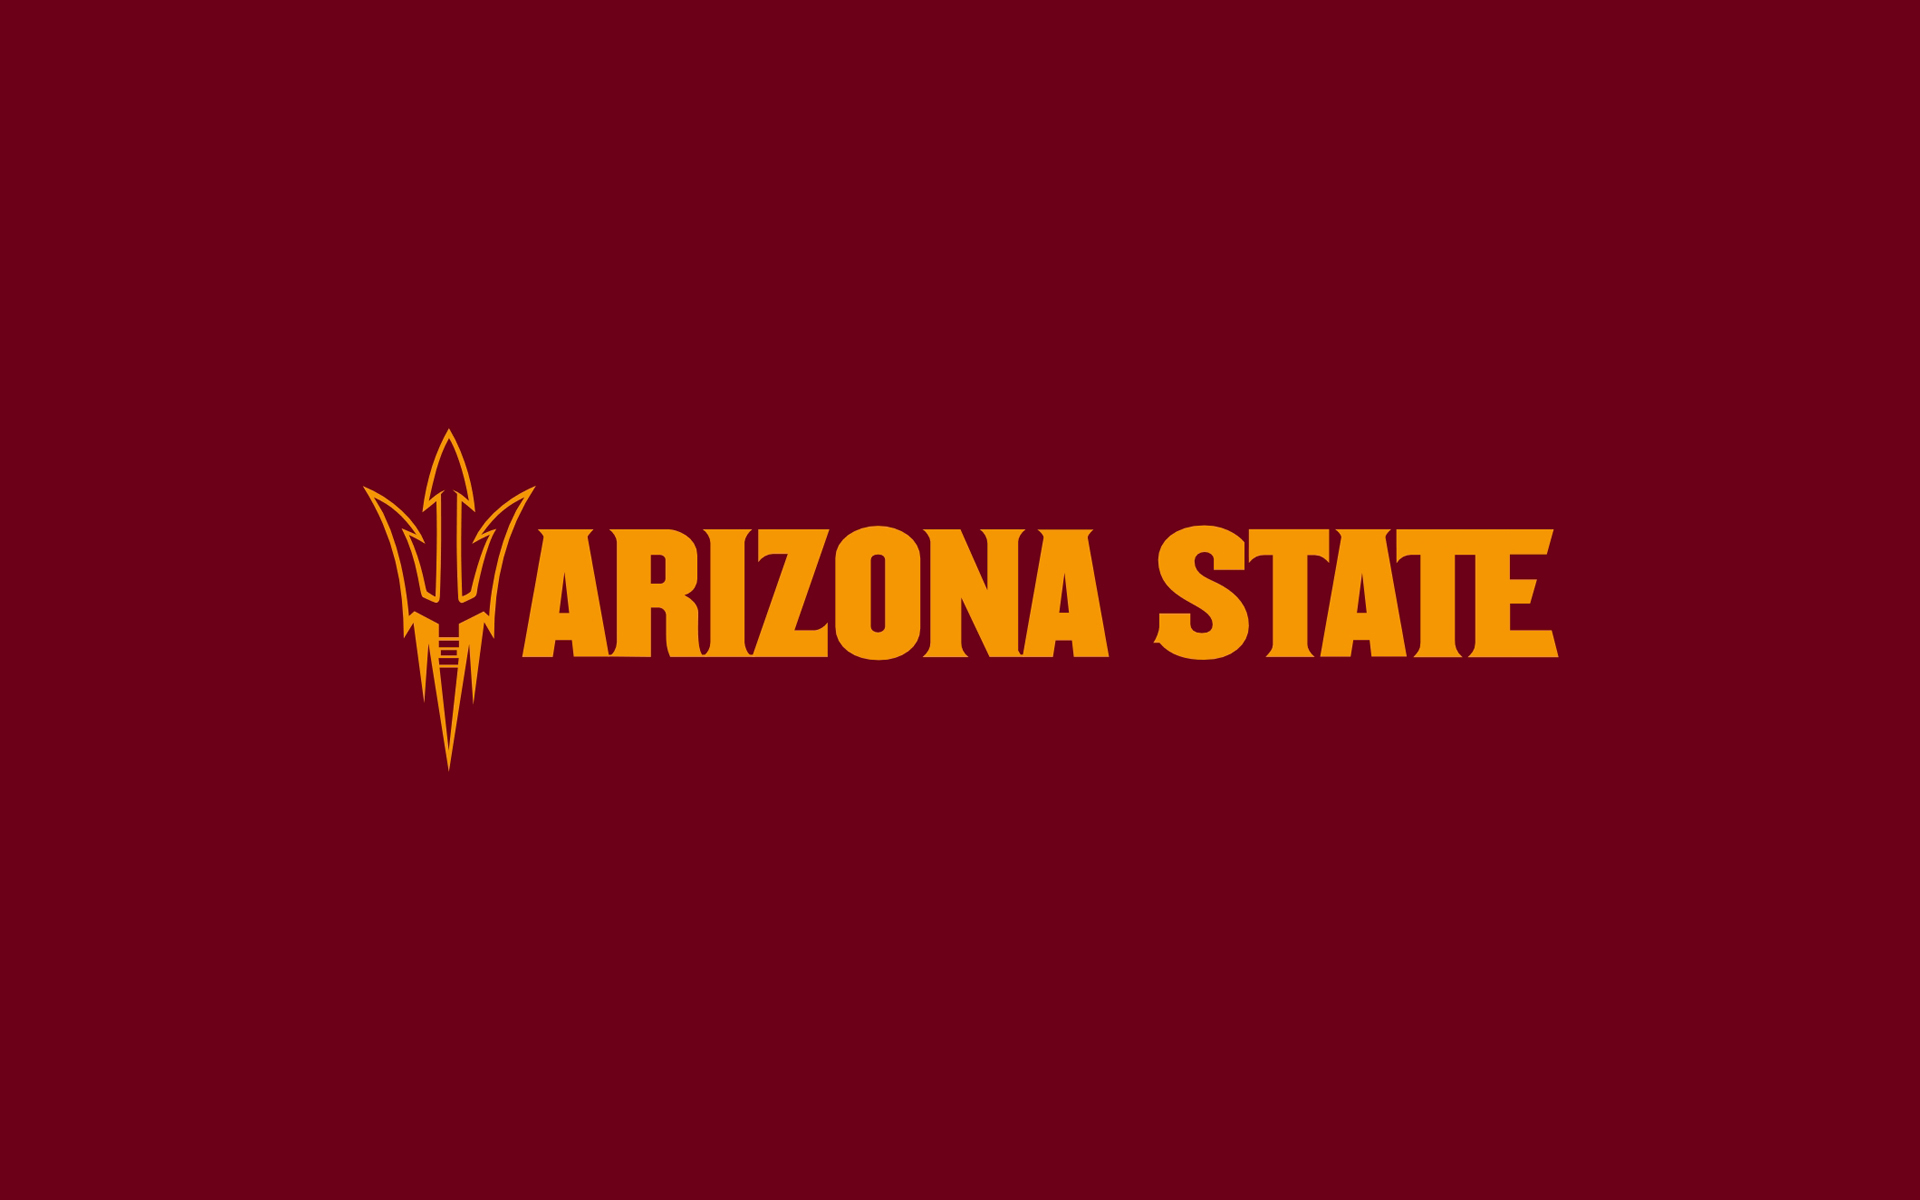 Displaying Image For Arizona State University Logo Wallpaper